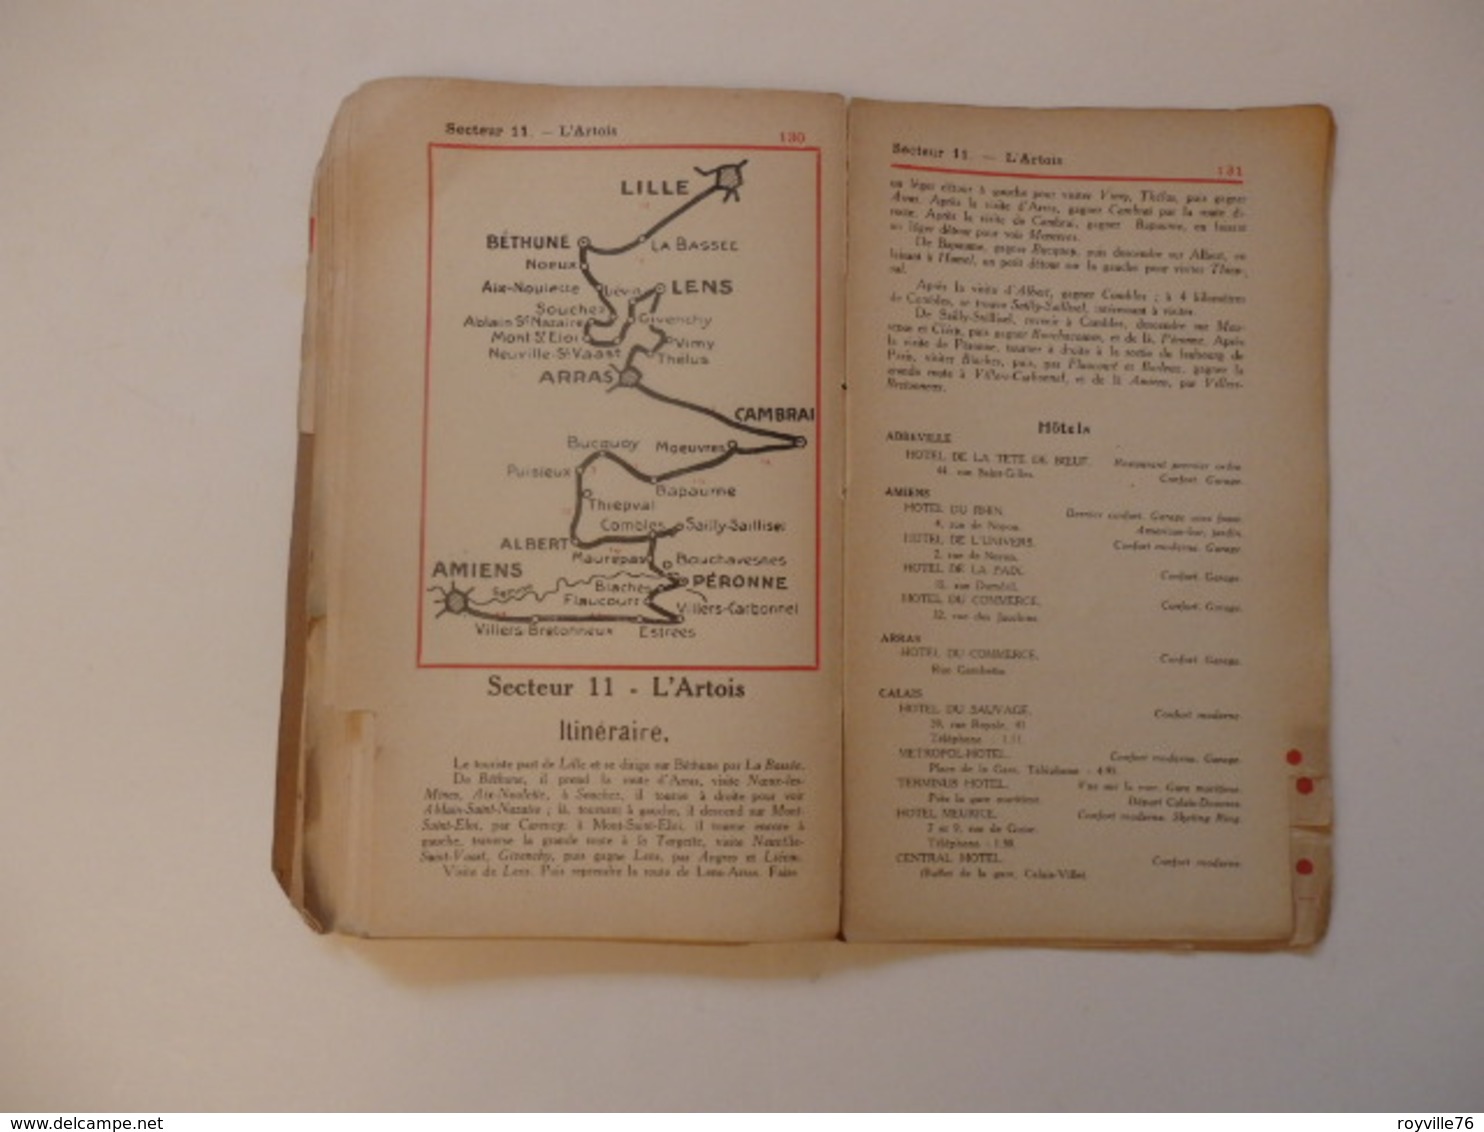 Livre-guide de l'autmobiliste, le pneu Goodrich et les Régions de guerre de 159 pages